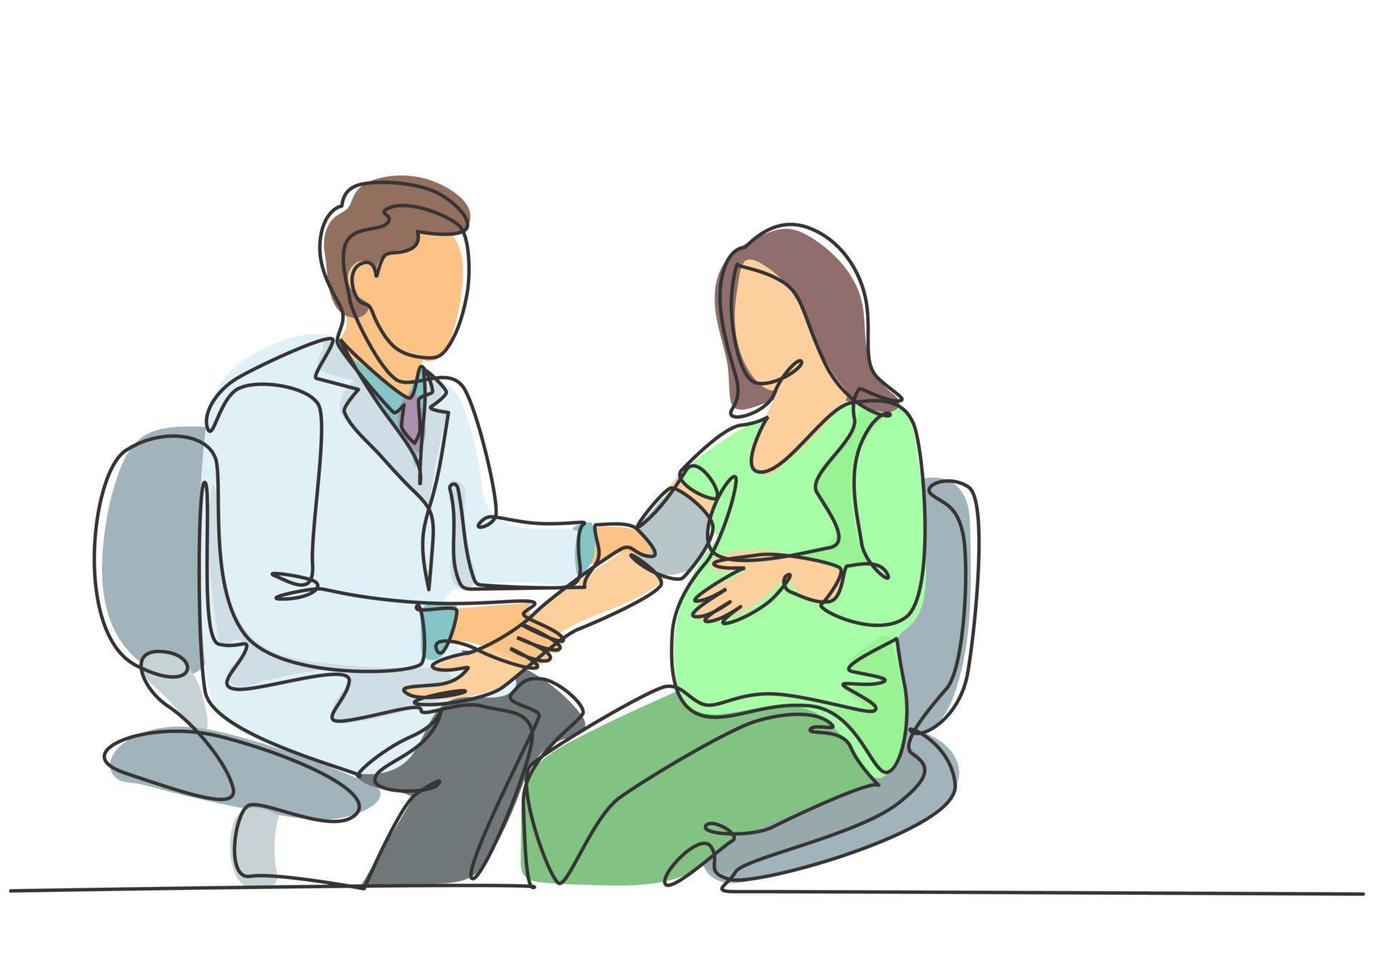 un dibujo de una sola línea del médico obstetra y ginecólogo masculino que controla la presión arterial del paciente y la condición fetal. concepto de cuidado de la salud del embarazo ilustración de vector de diseño de dibujo de línea continua